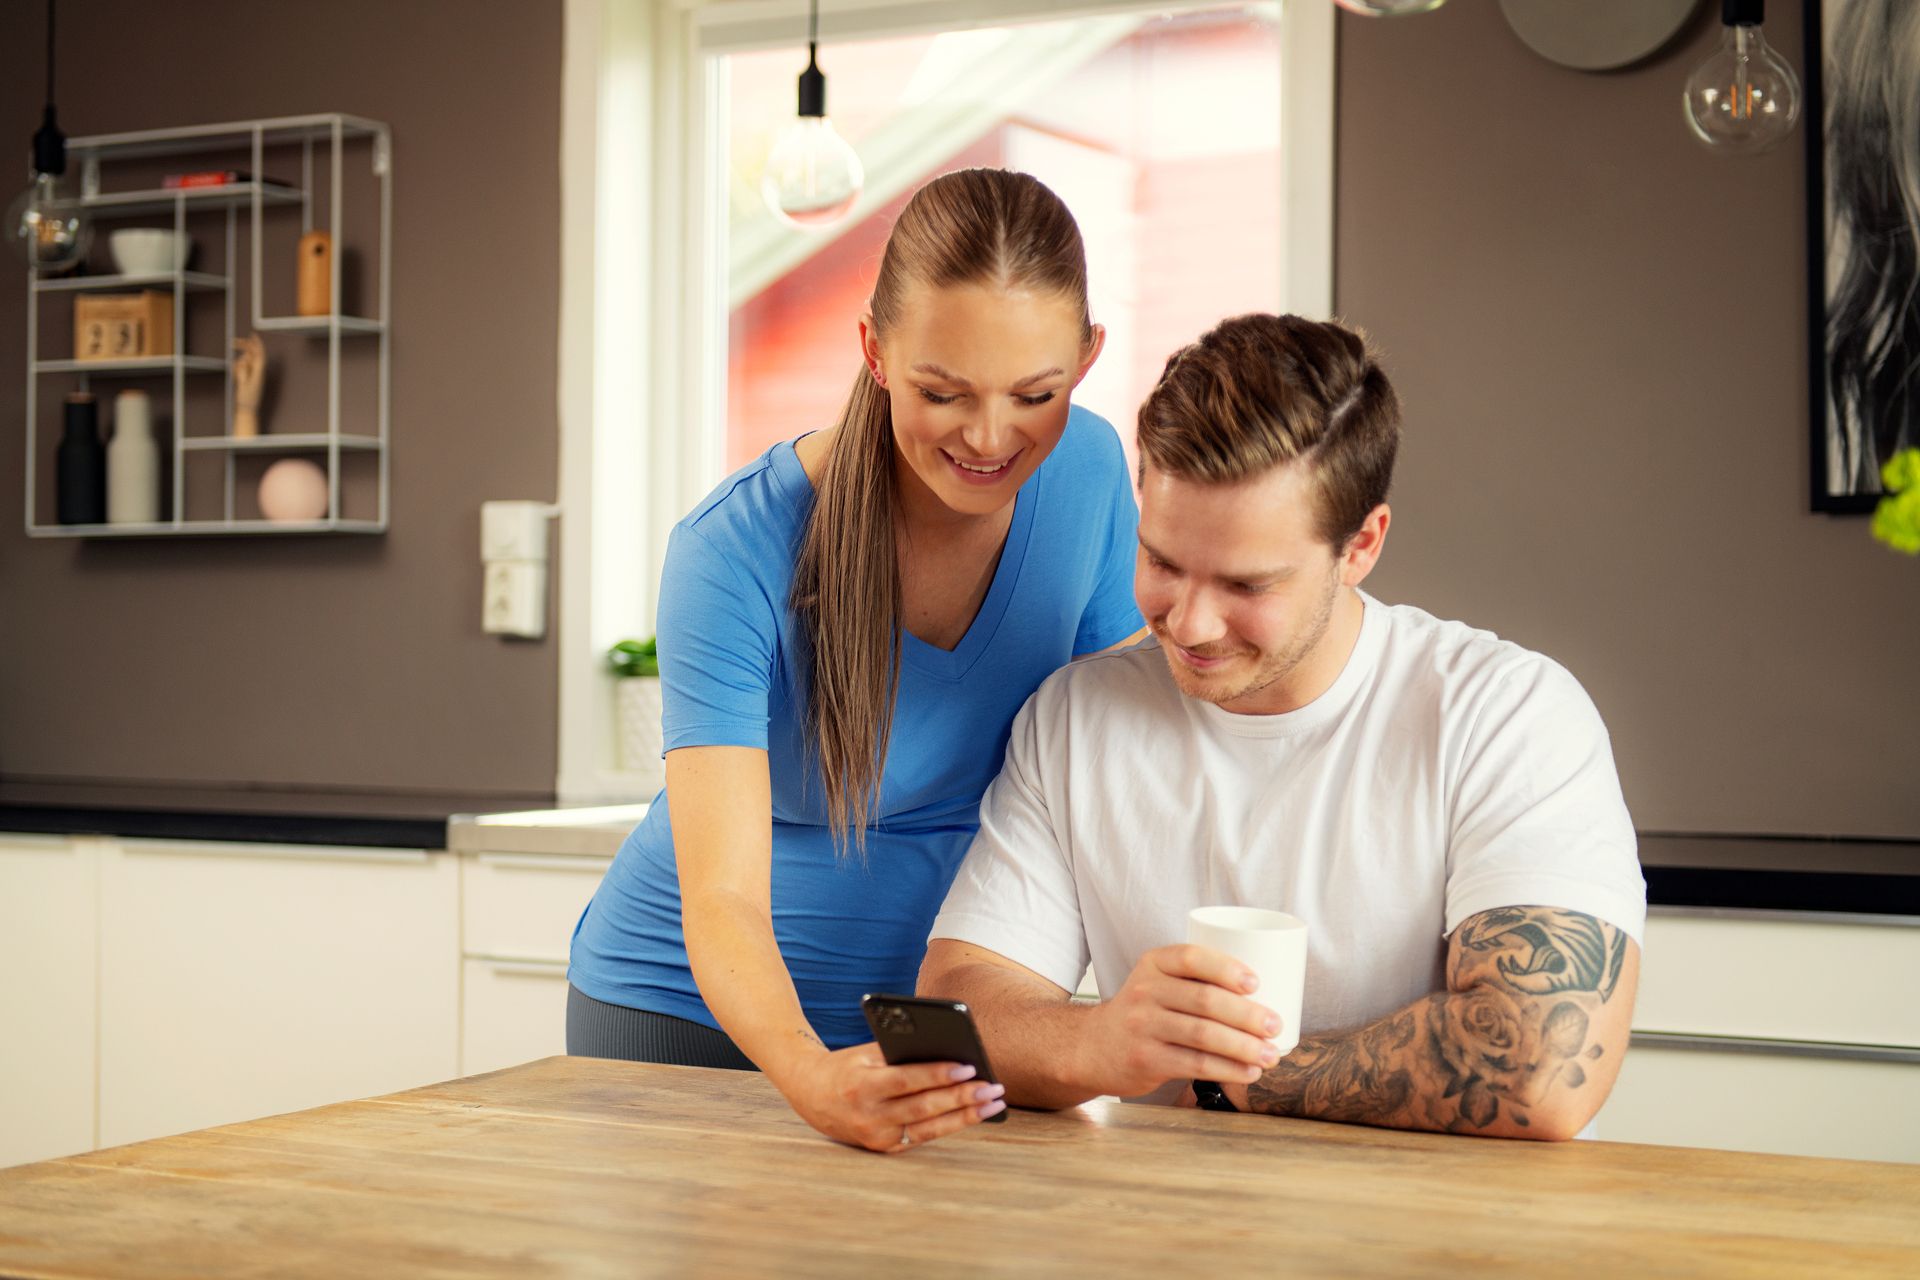 Par ved et bord, mann holder i en kaffekopp og dame viser frem noe på en mobil. Foto.
